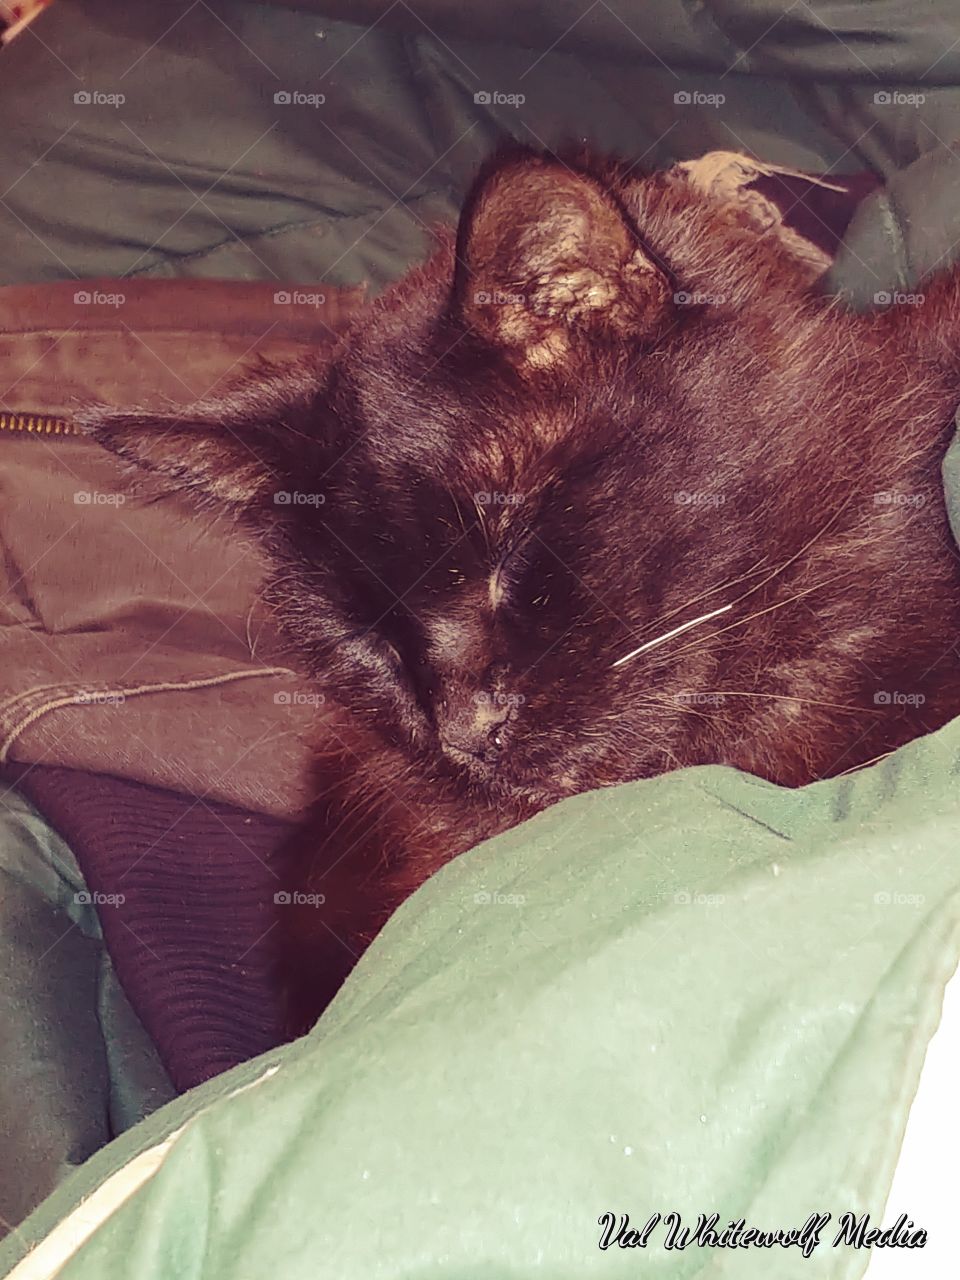 blanket cat bed sleeping ears nose